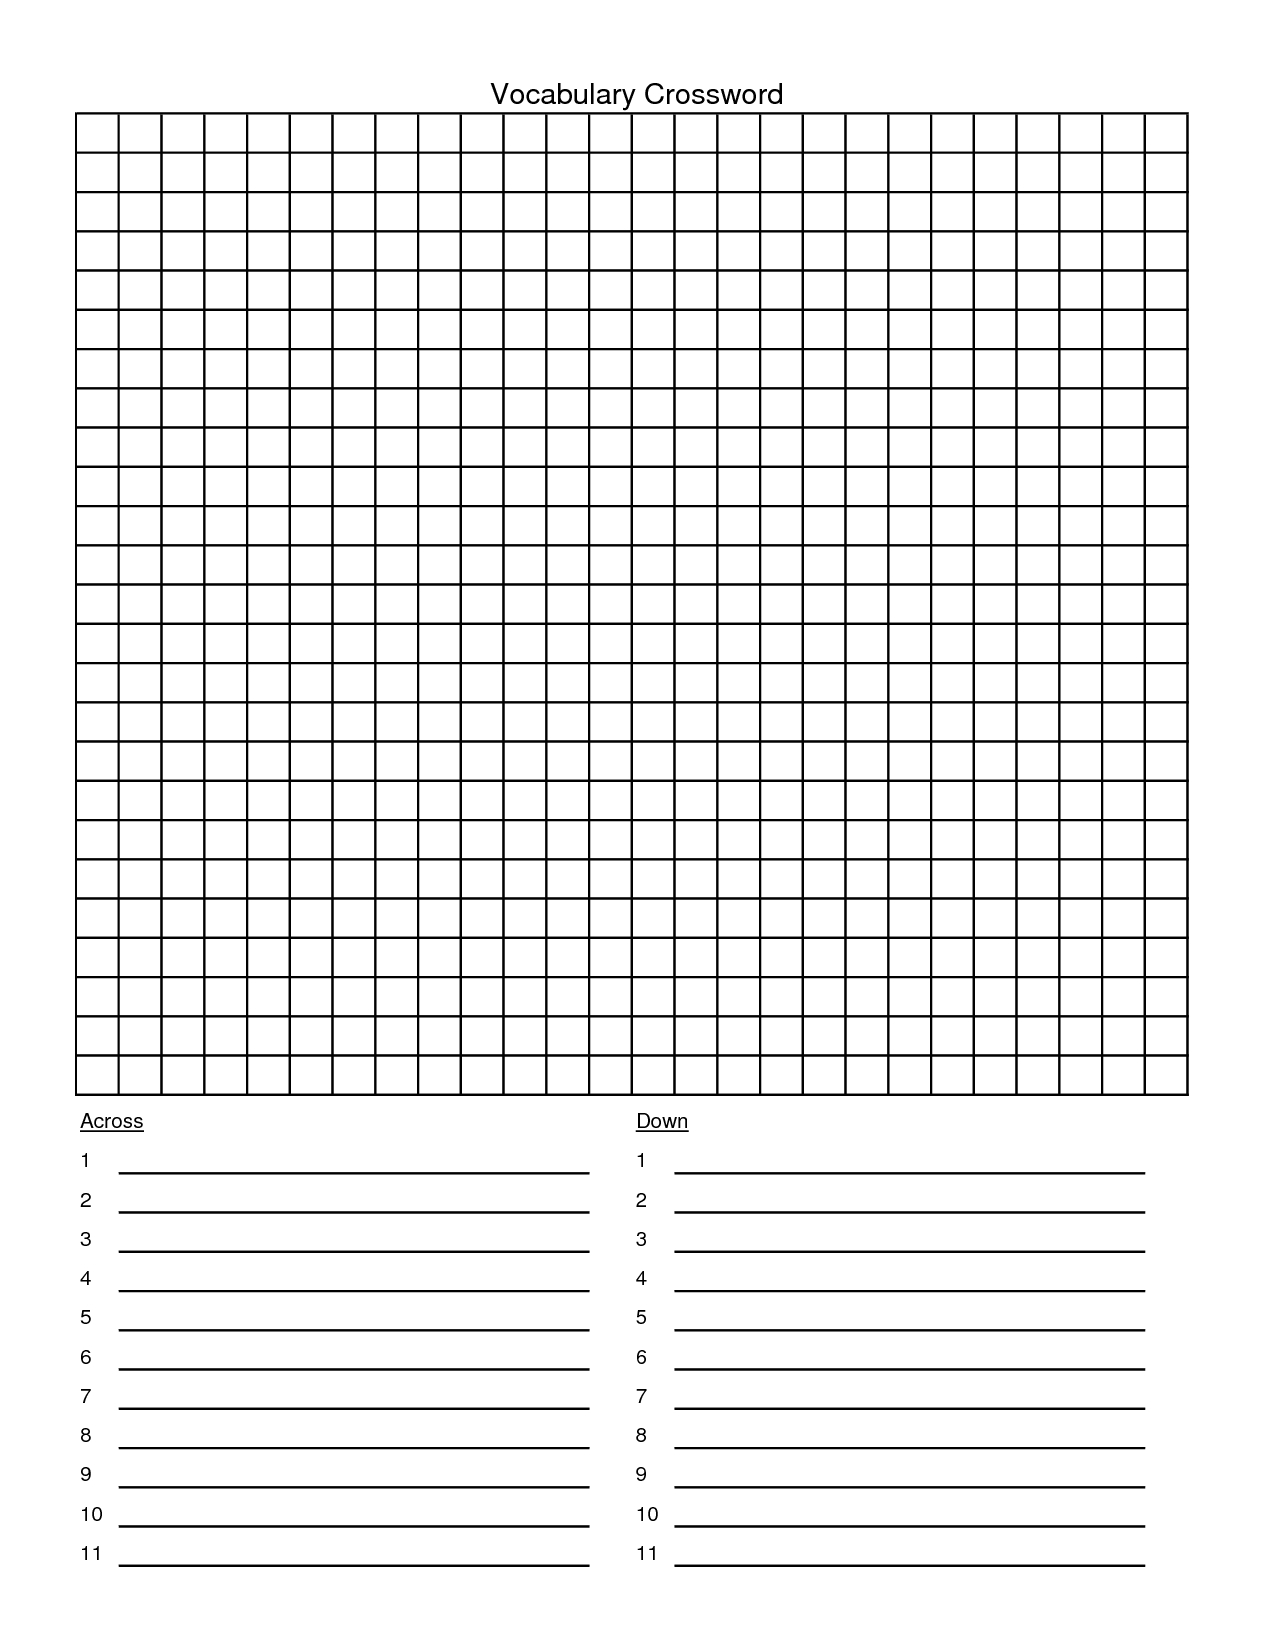 Blank Crossword Template. Blank Crossword Puzzle Clues Template - Printable Blank Crossword Grid